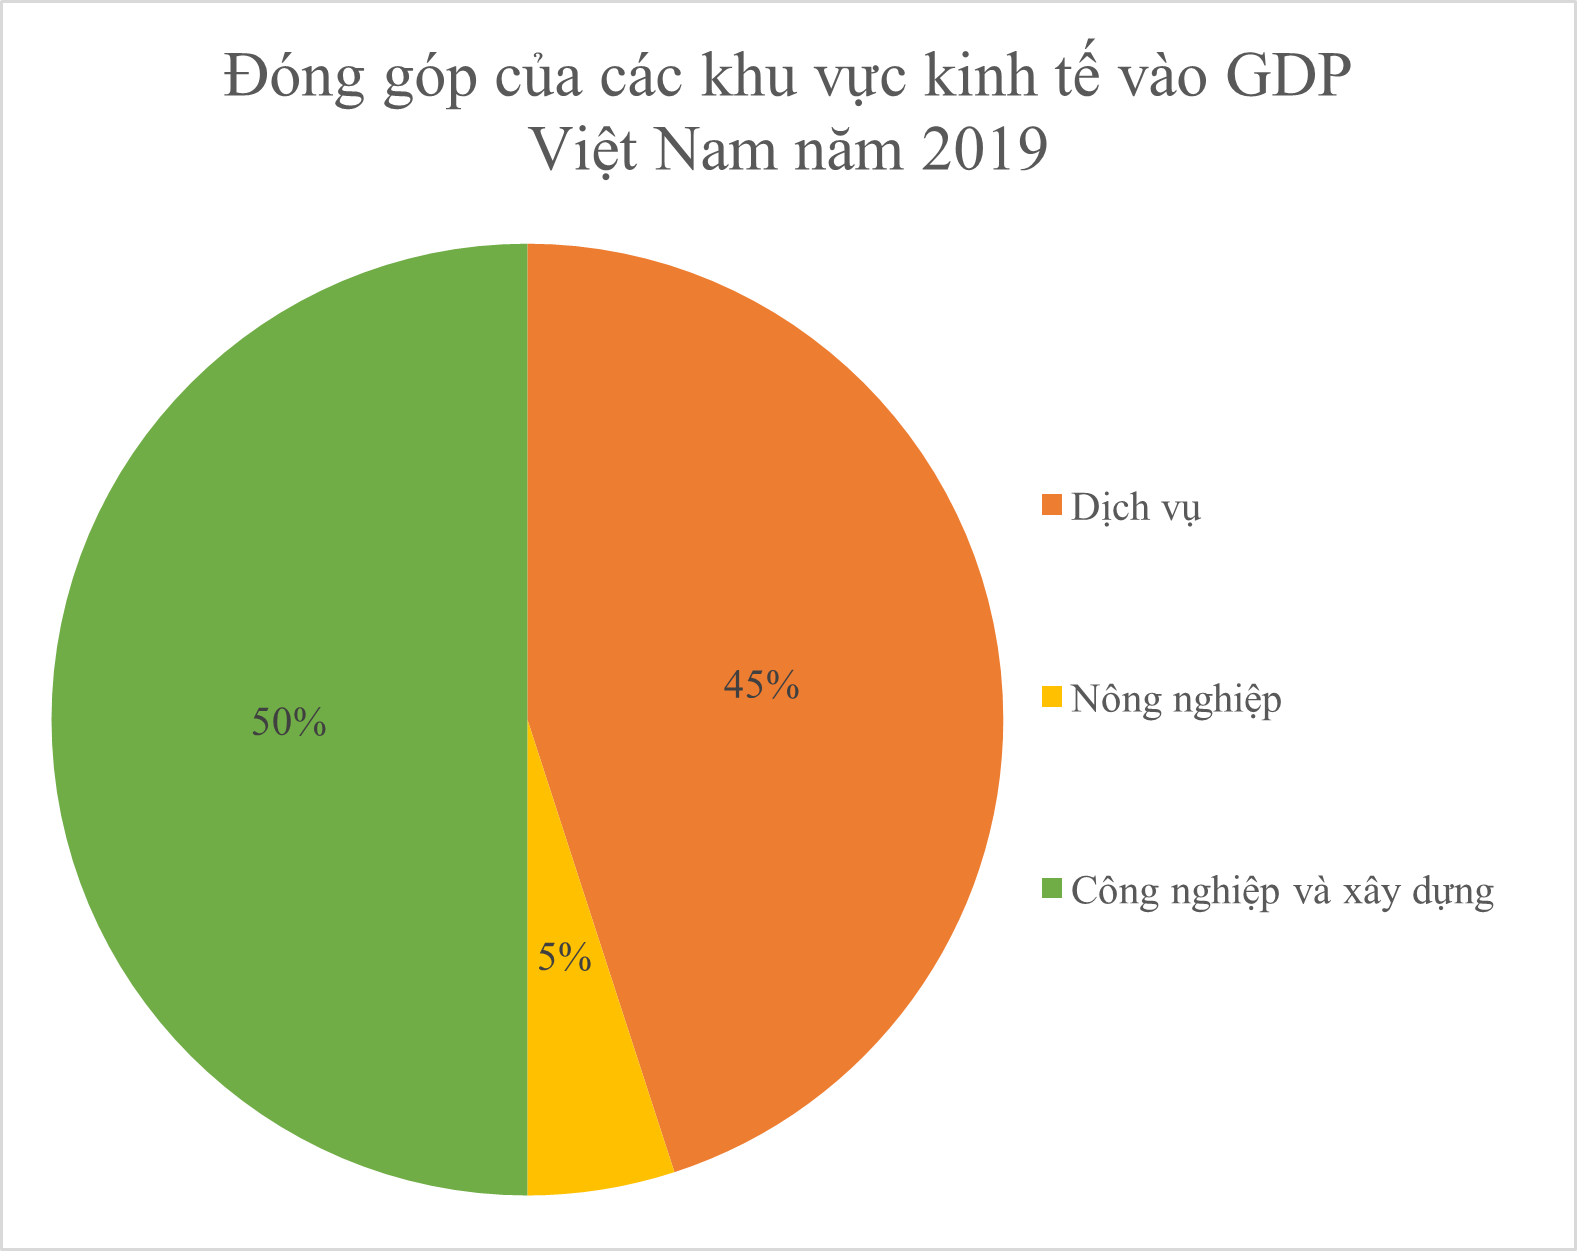 Cho biểu đồ sau:Năm 2019, tổng GDP của Việt Nam là 261 tỉ đô la. Khu vực Dịch vụ đóng góp vào GDP Việt Nam bao nhiêu? (ảnh 1)